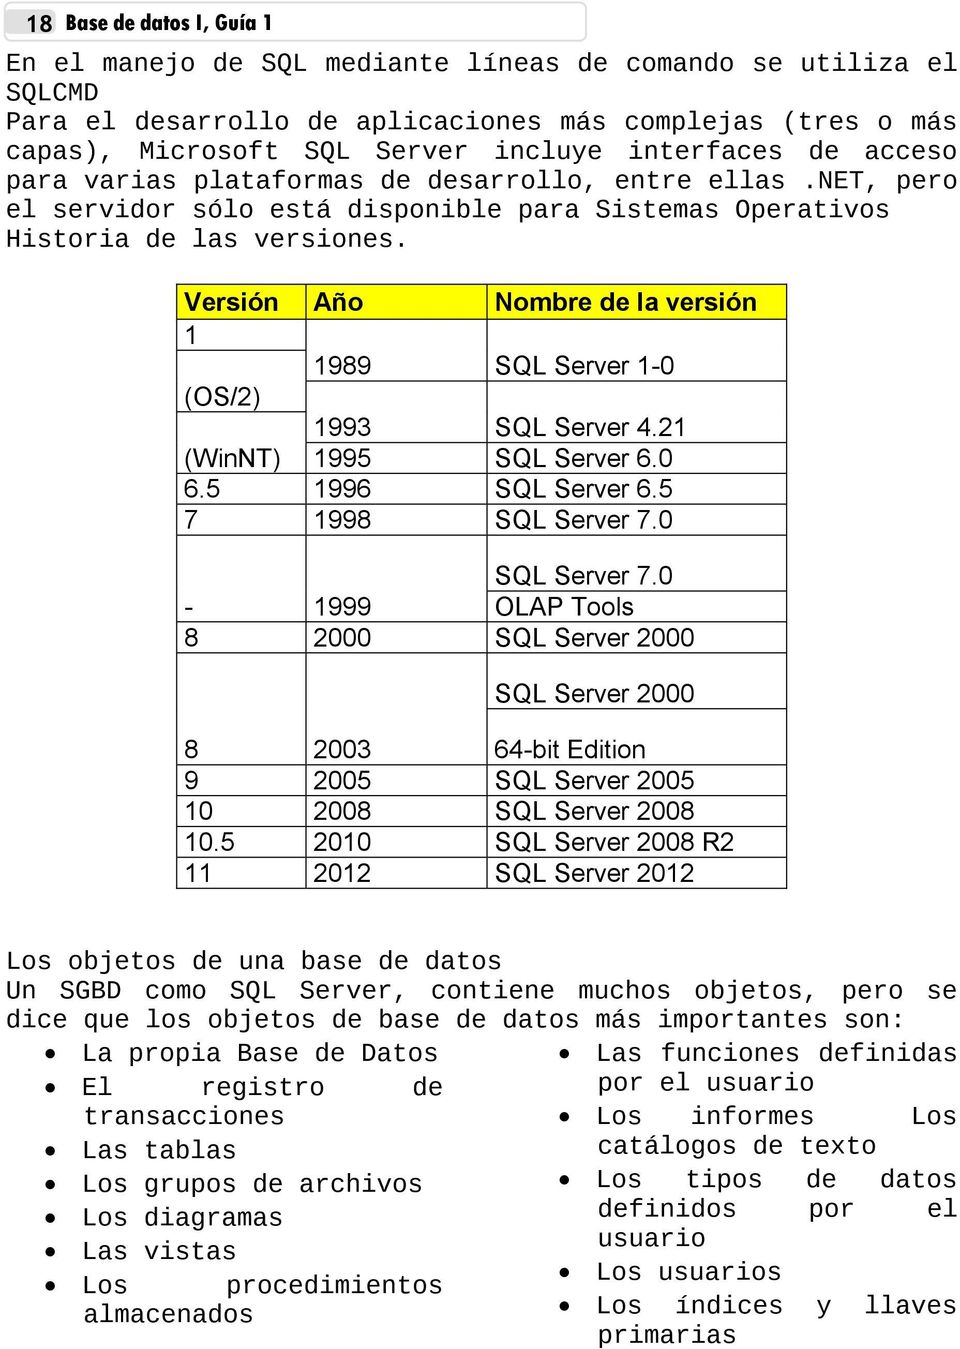 Versión Año Nombre de la versión 1 1989 SQL Server 1-0 (OS/2) 1993 SQL Server 4.21 (WinNT) 1995 SQL Server 6.0 6.5 1996 SQL Server 6.5 7 1998 SQL Server 7.0 SQL Server 7.